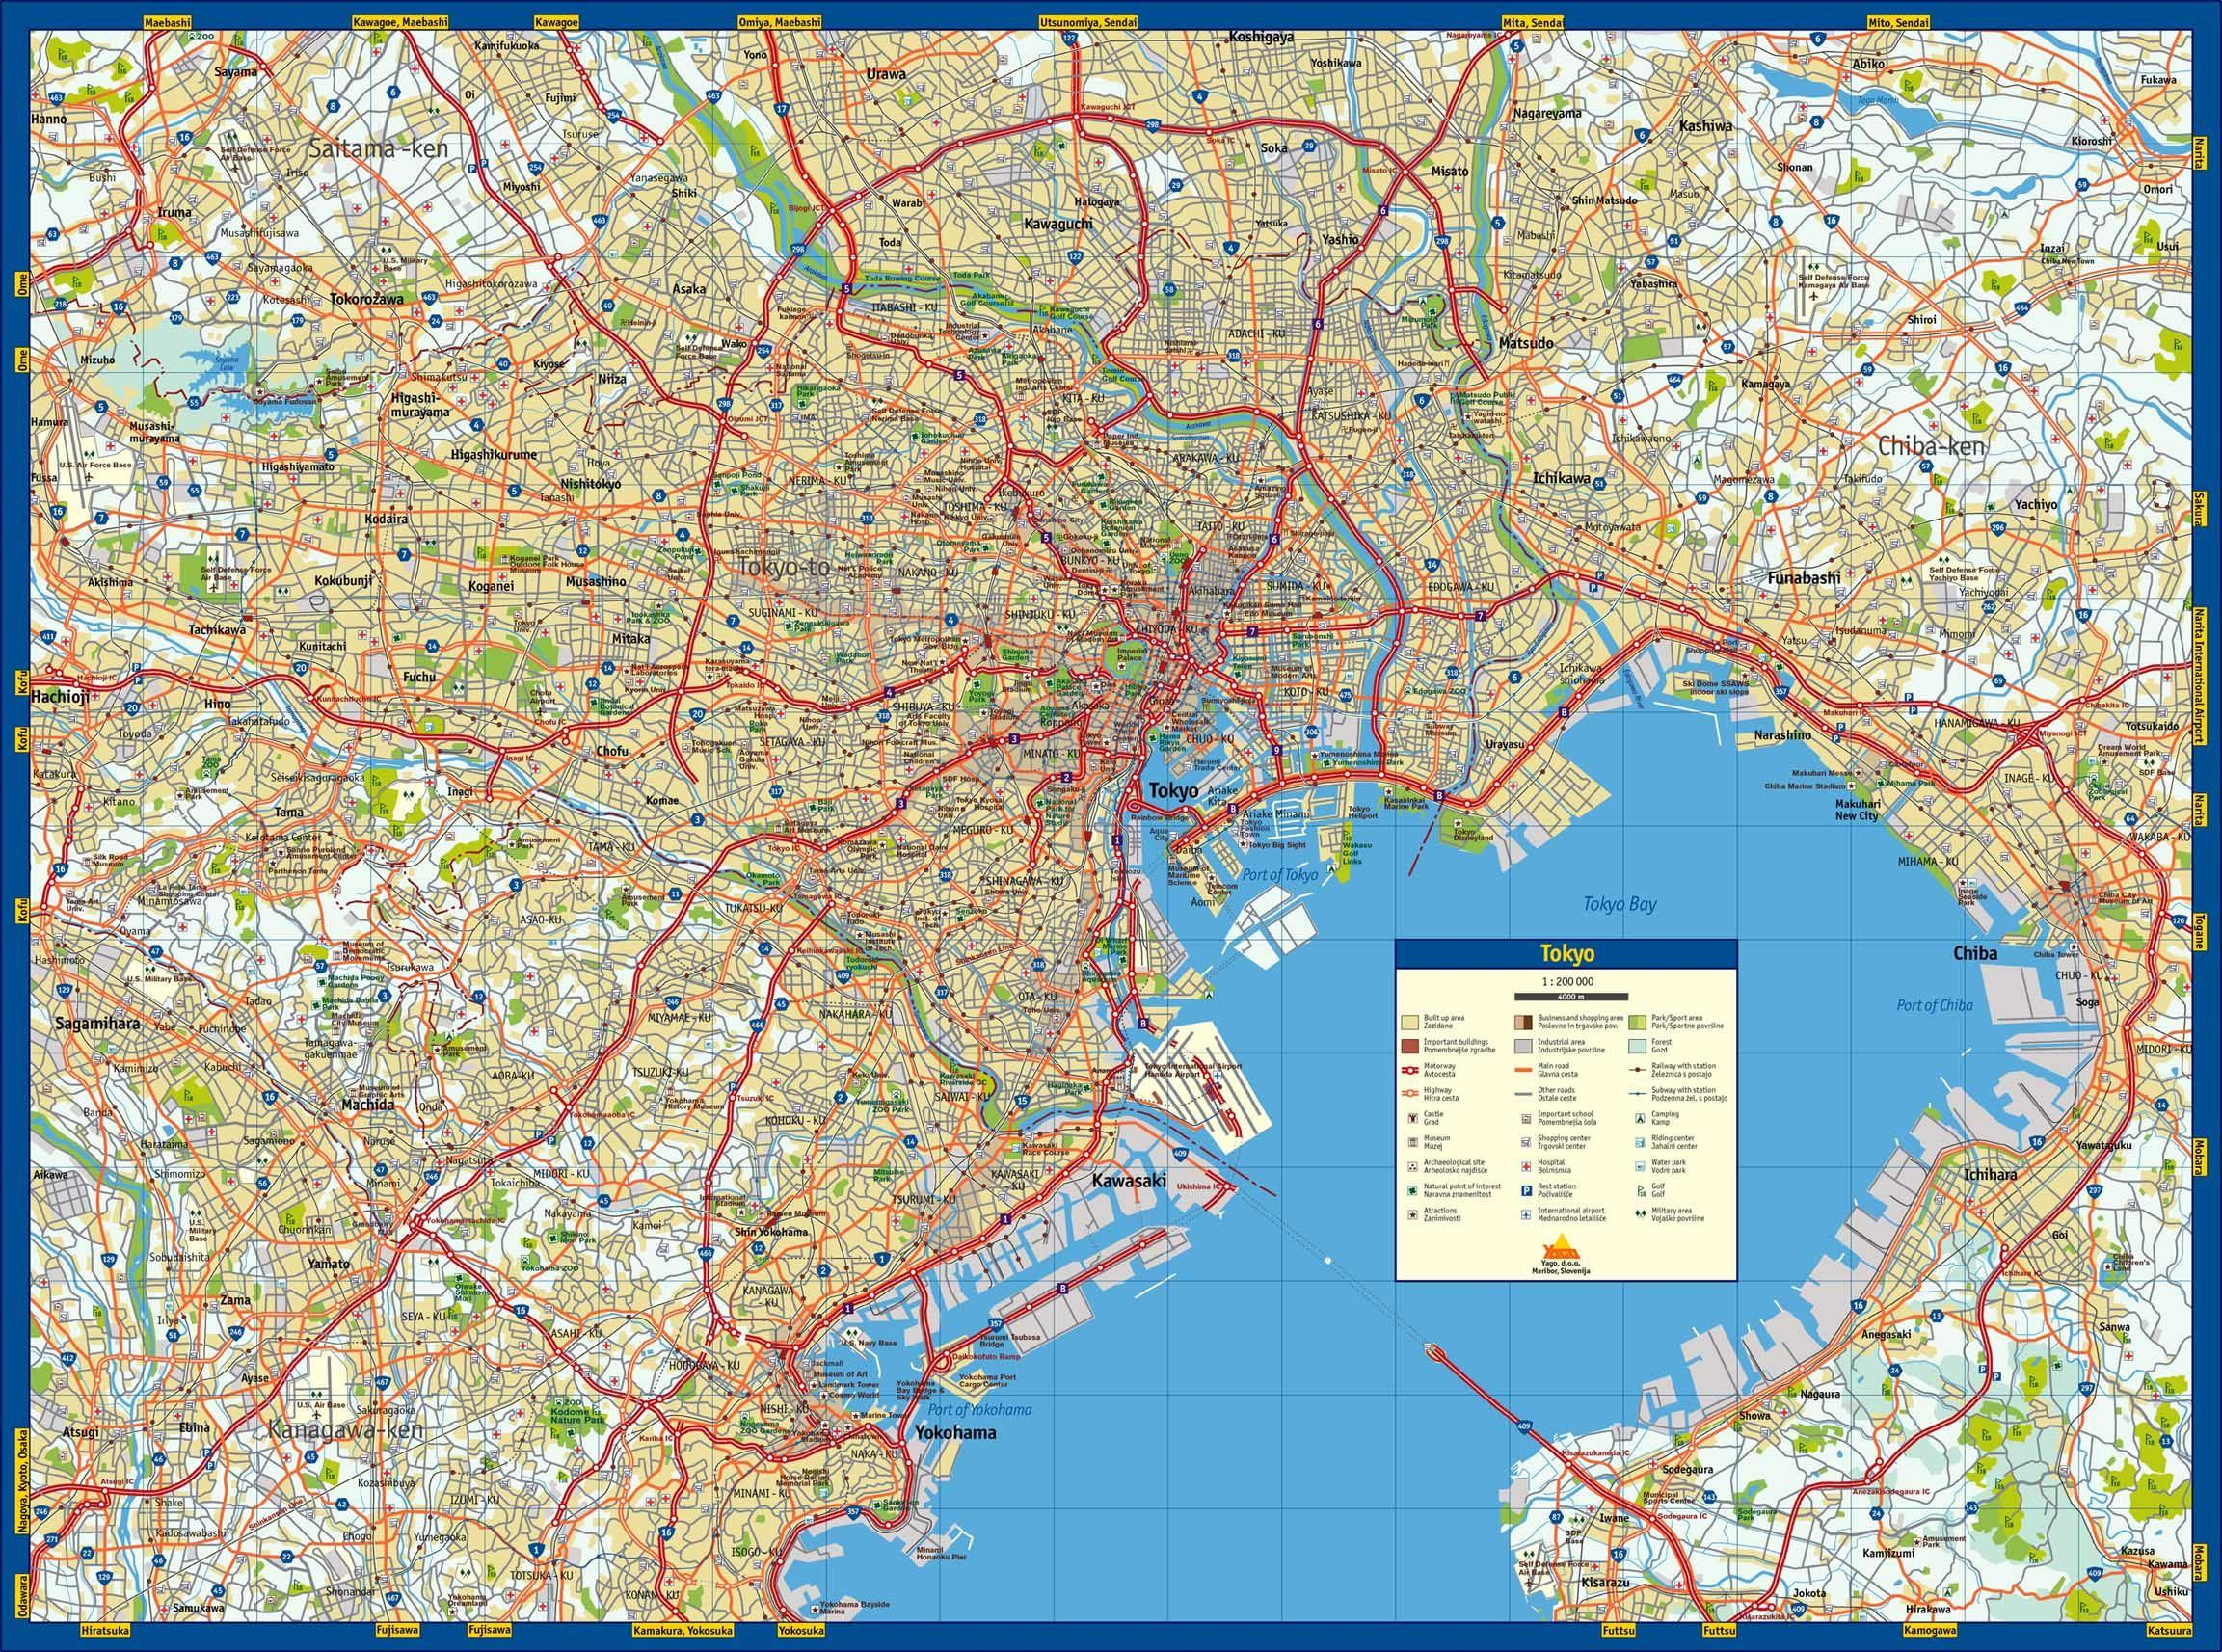 Tokyo Street Map Street Map Of Tokyo Kant Japan 